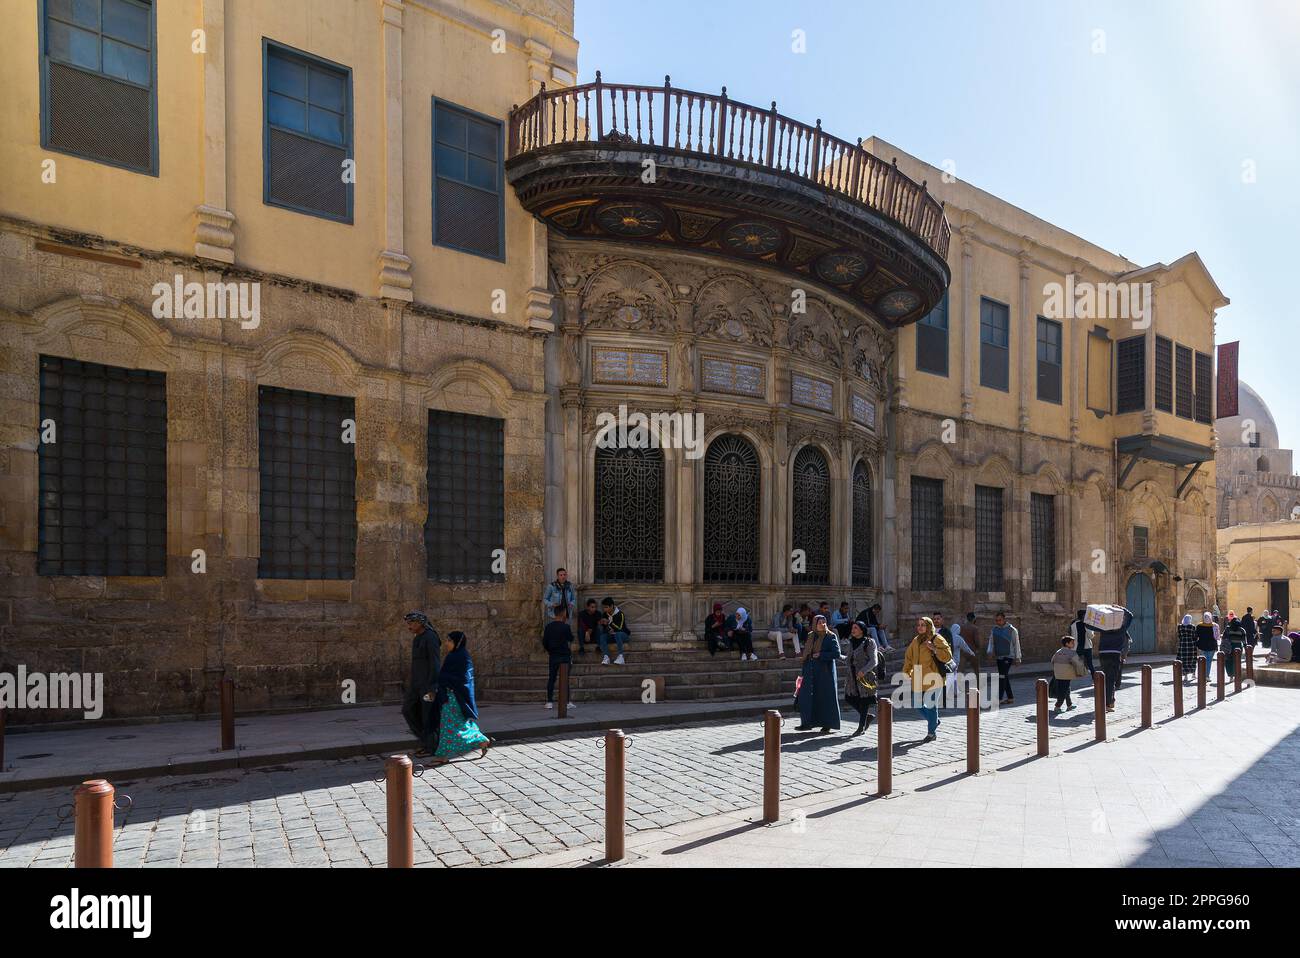 Bâtiment historique Mohamed Ali Sabil de l'époque ottomane, rue Mpez, quartier Nahassen, le Caire, Egypte Banque D'Images